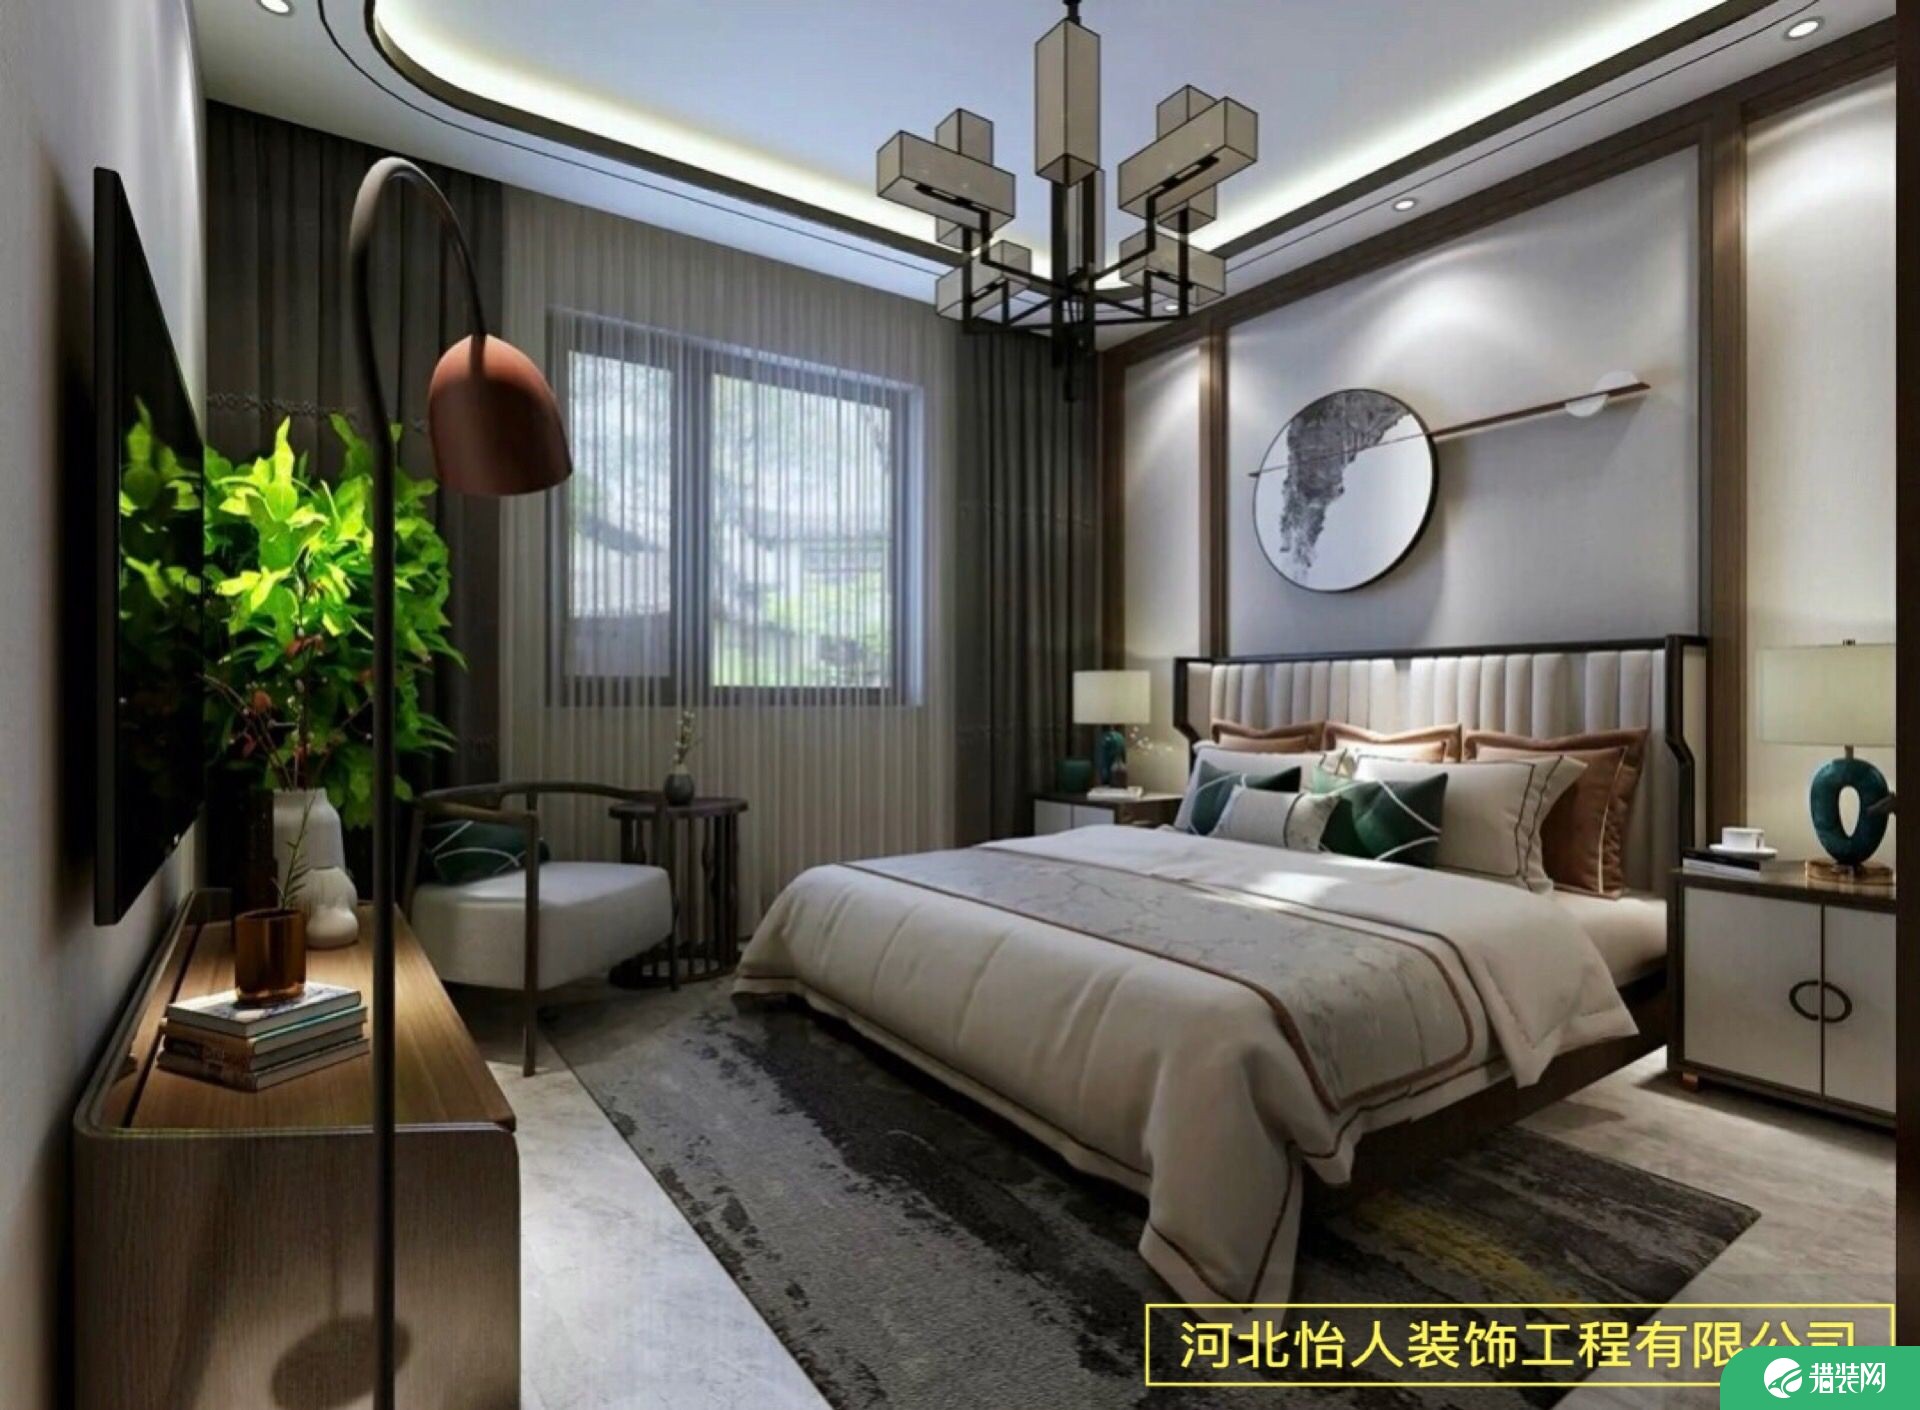 中式风格三居室装修效果图